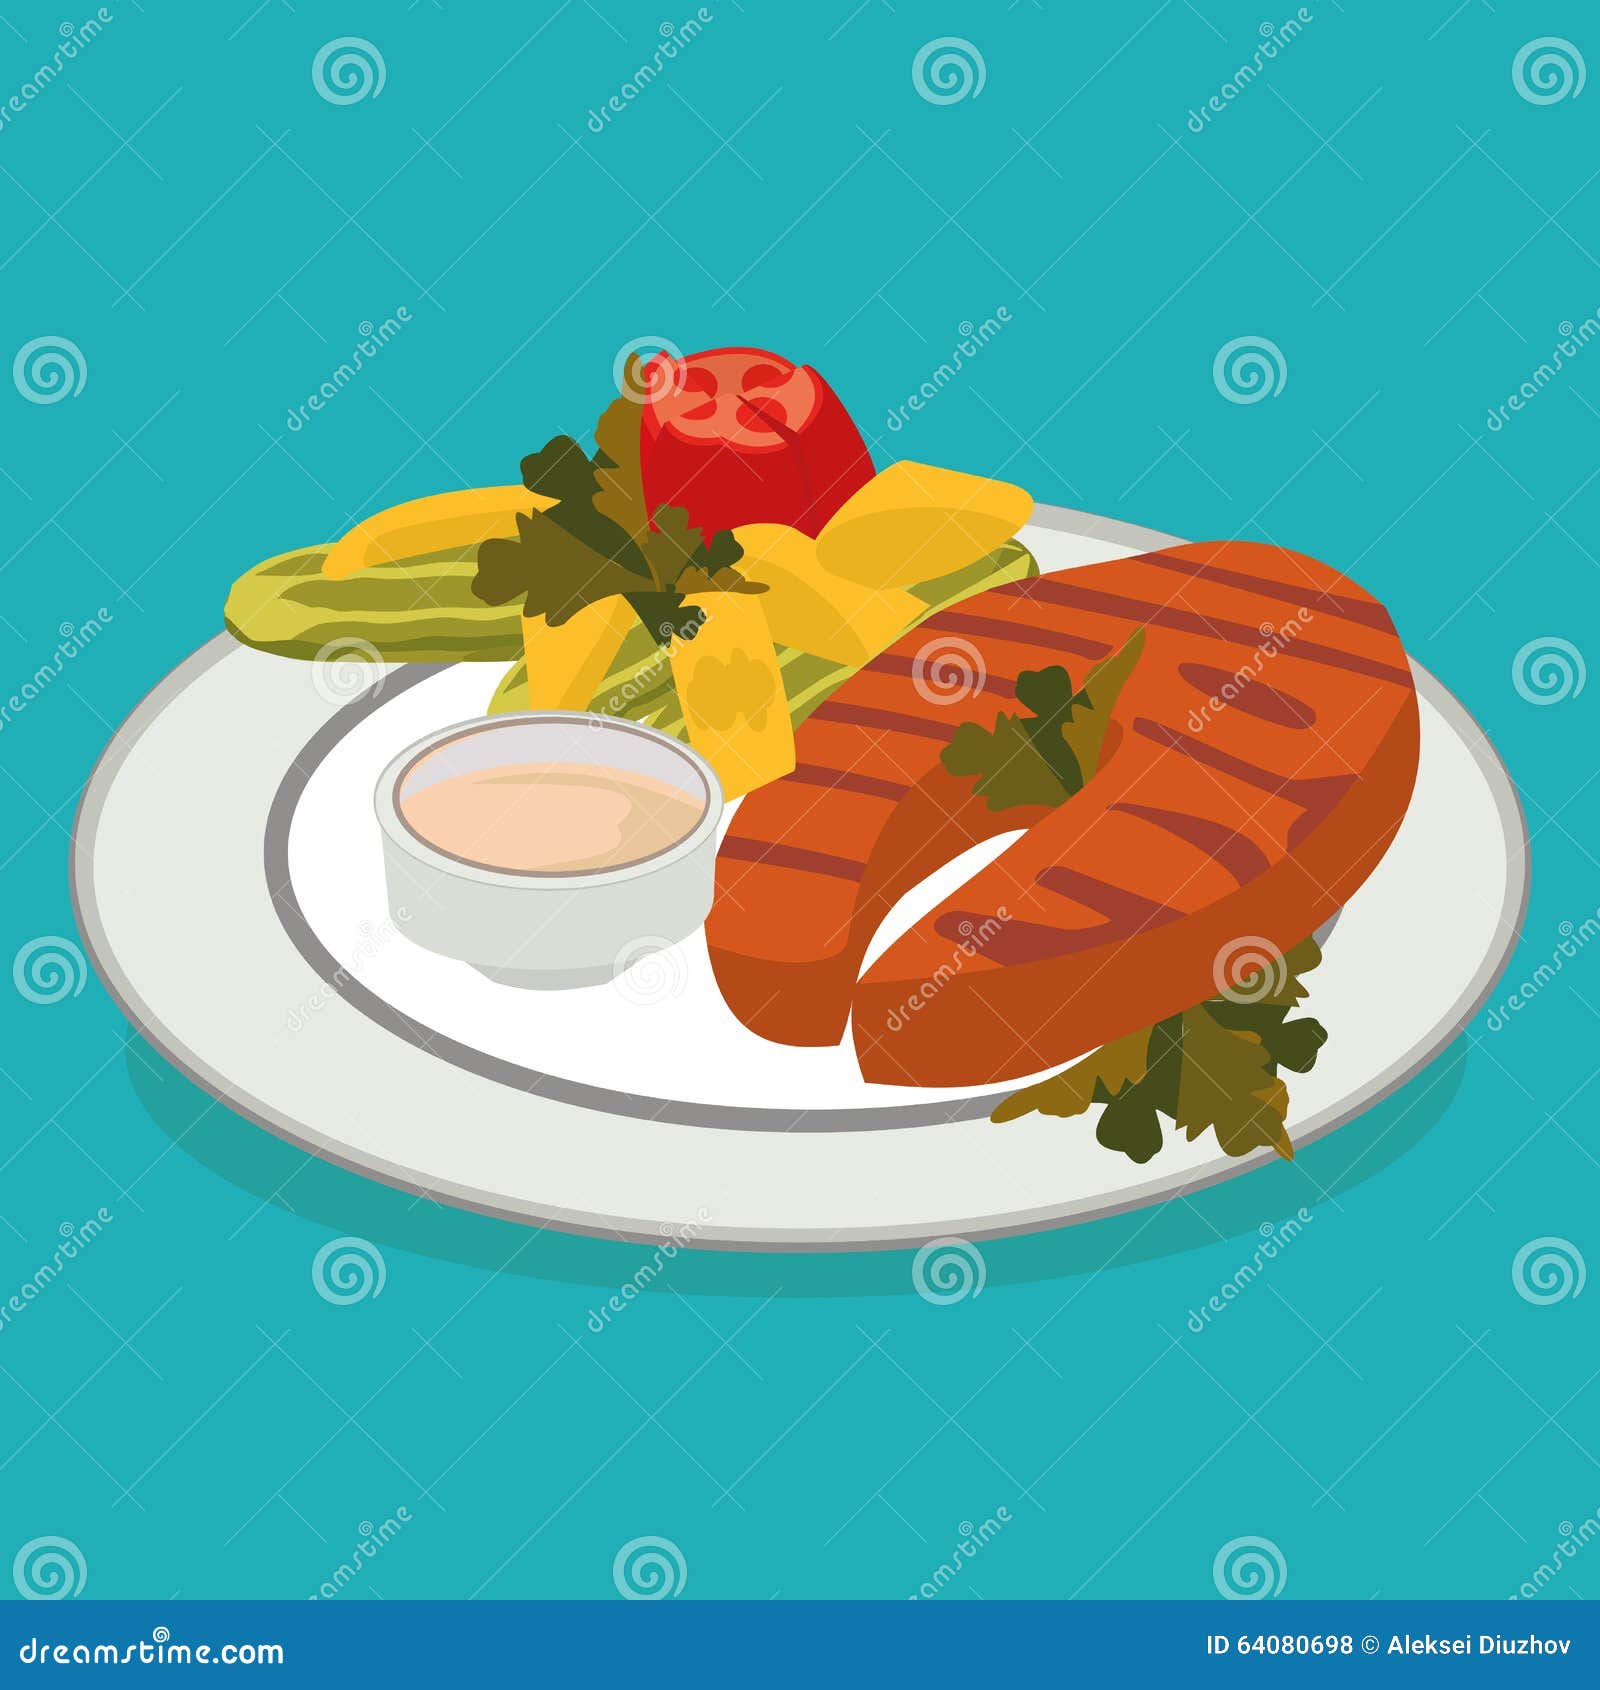 Flat food. Иллюстрация продуктов флэт. Флэт иллюстрация еда. Еда иллюстрация вектор в стиле флэт. Флэт арт еда.